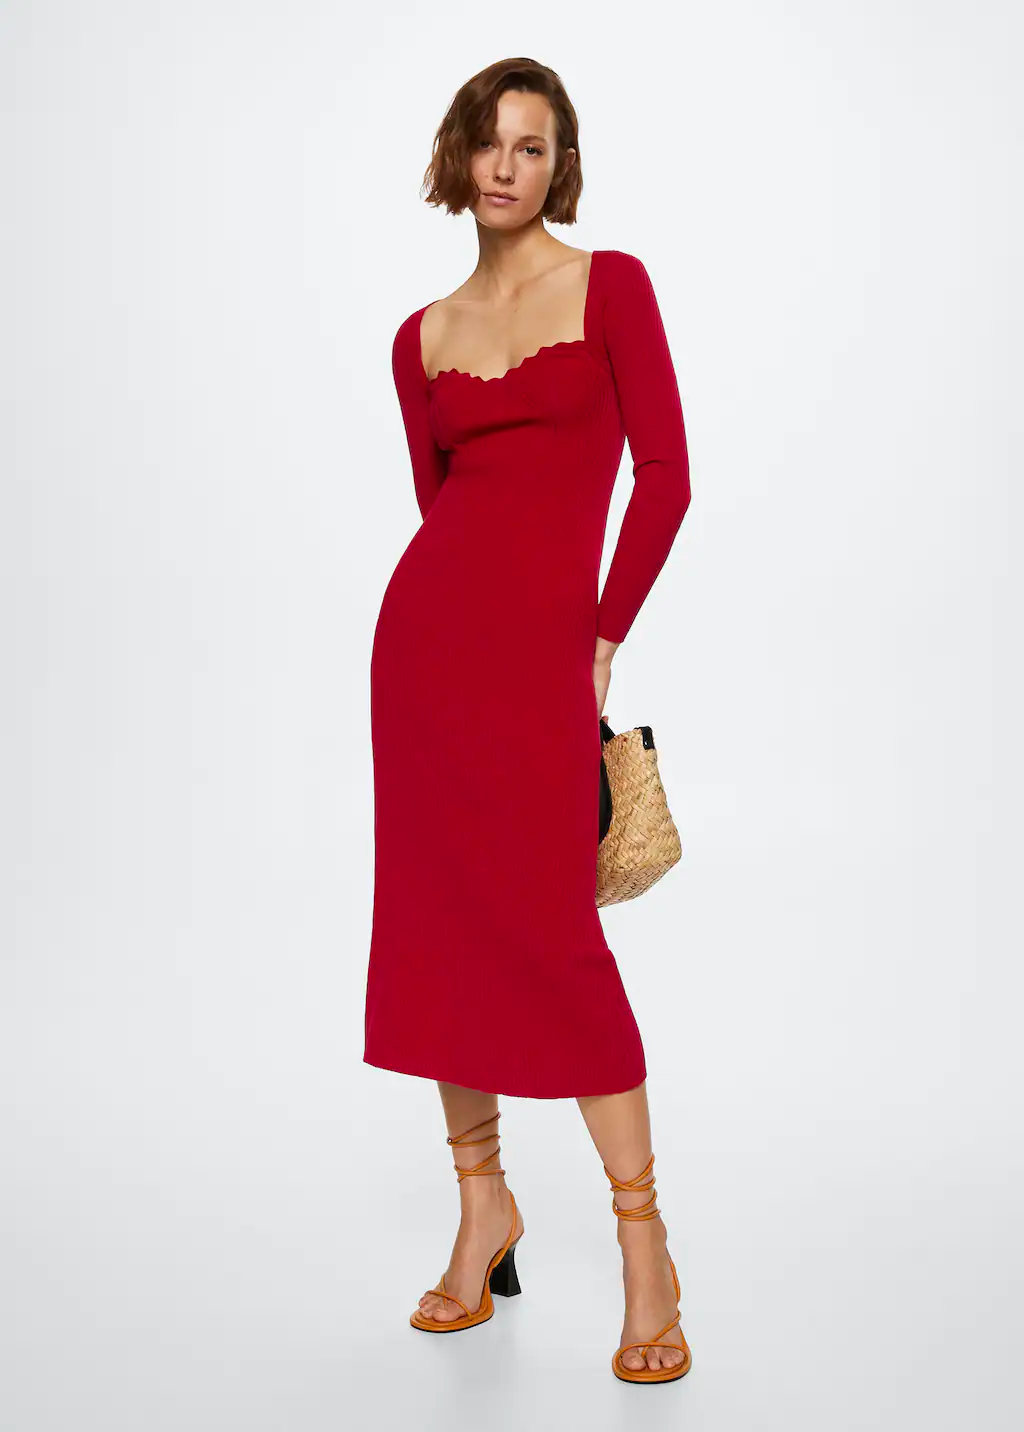 Mango red dress. Selena Gomez Red Dress | Mango Knit Dress | 